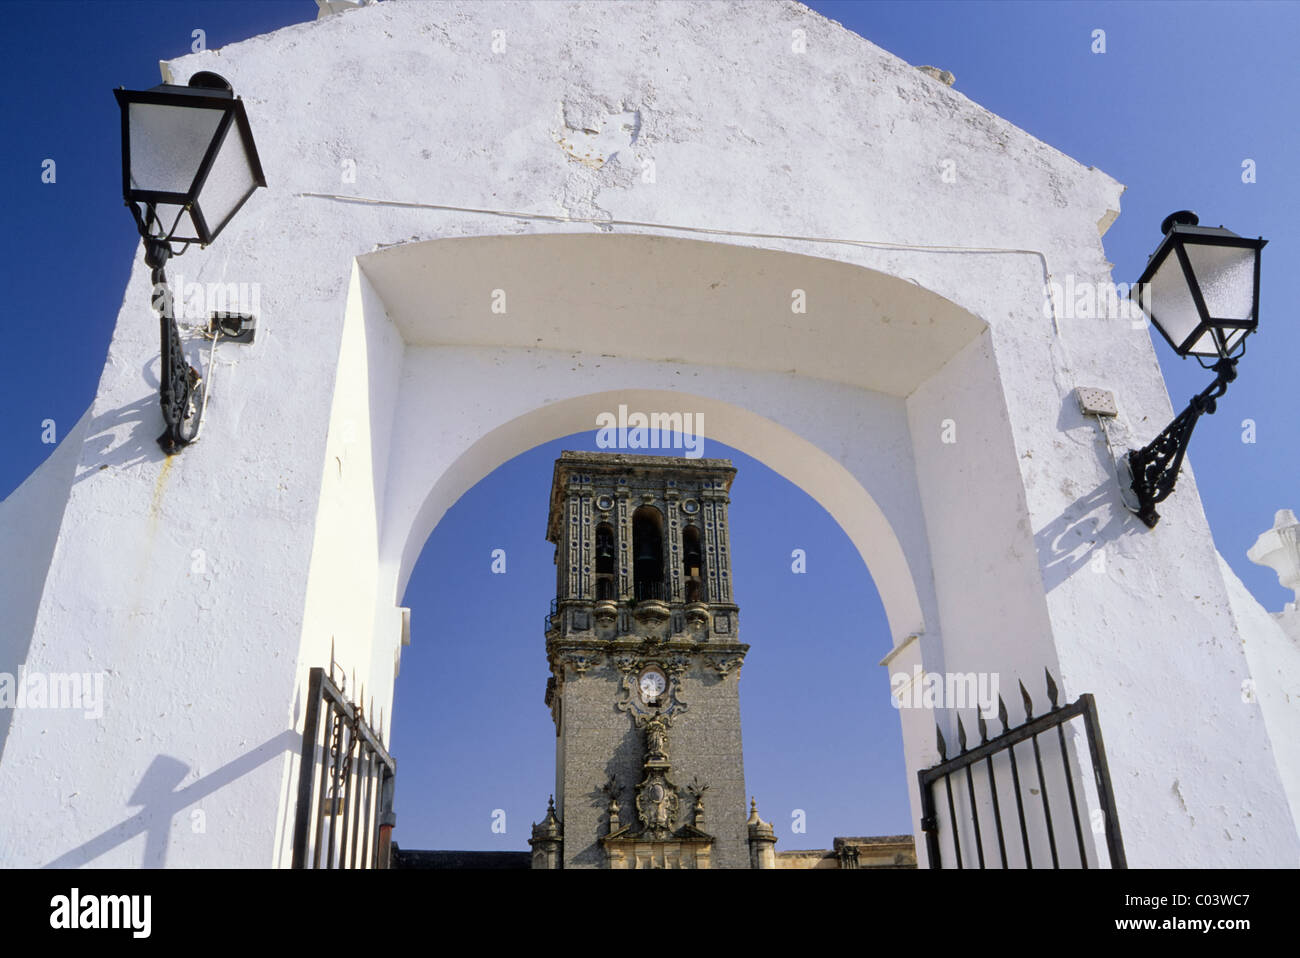 Gate to Santa Maria de la Asuncion church at hill town of Arcos de la Frontera, Ruta de los Pueblos Blancos, Andalusia, Spain Stock Photo